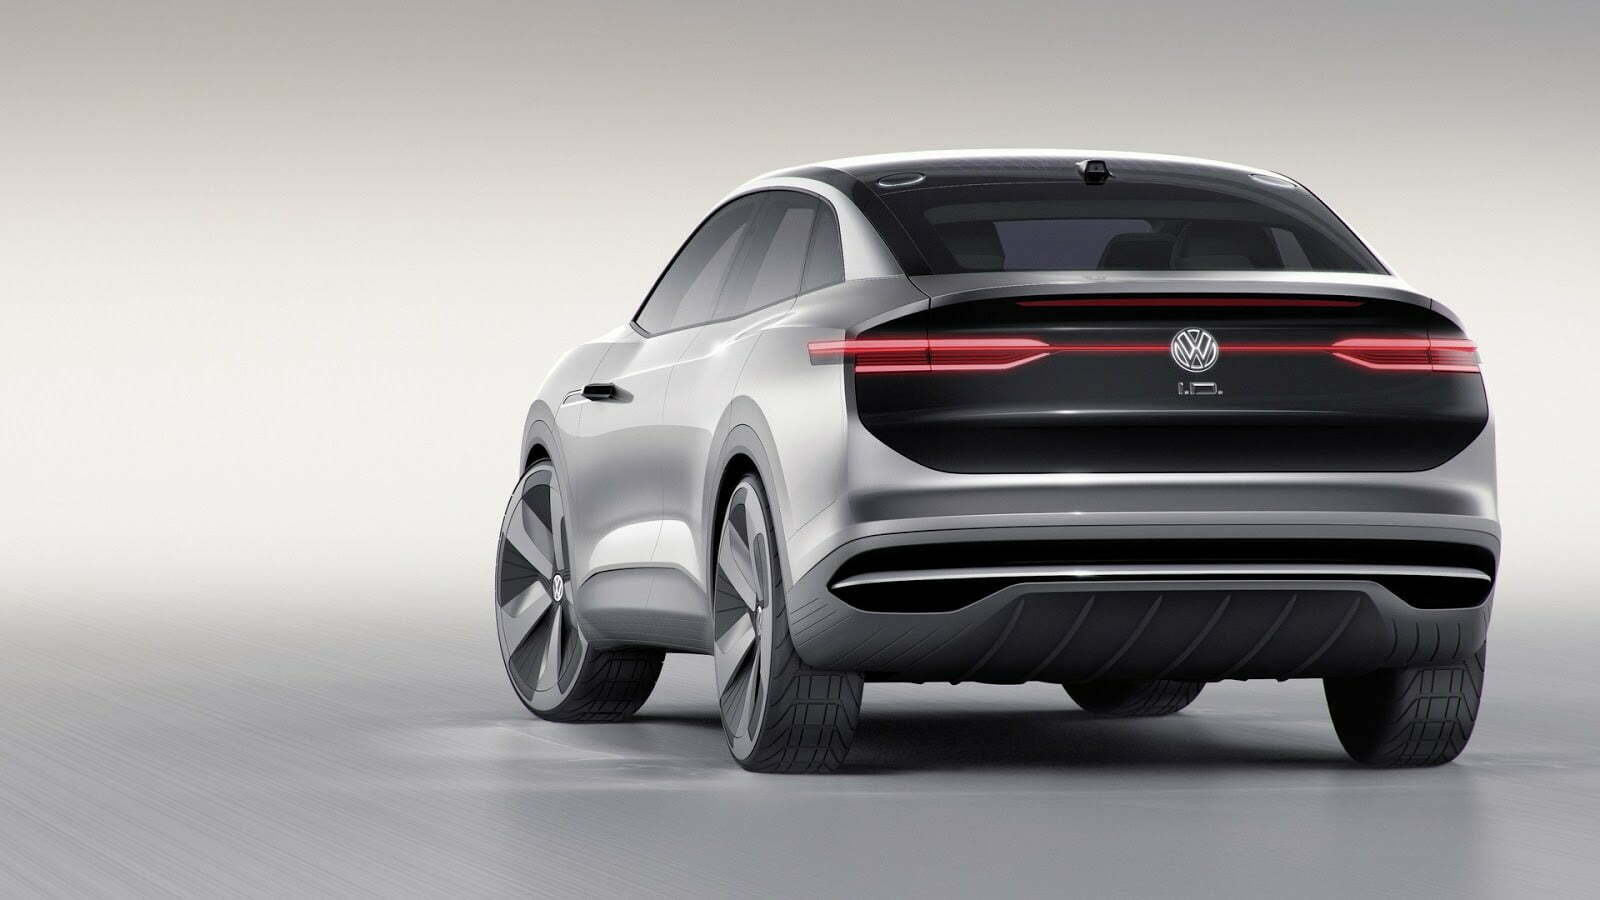 Дизайн задней части Volkswagen I.D. Crozz. Концепт 2017 года